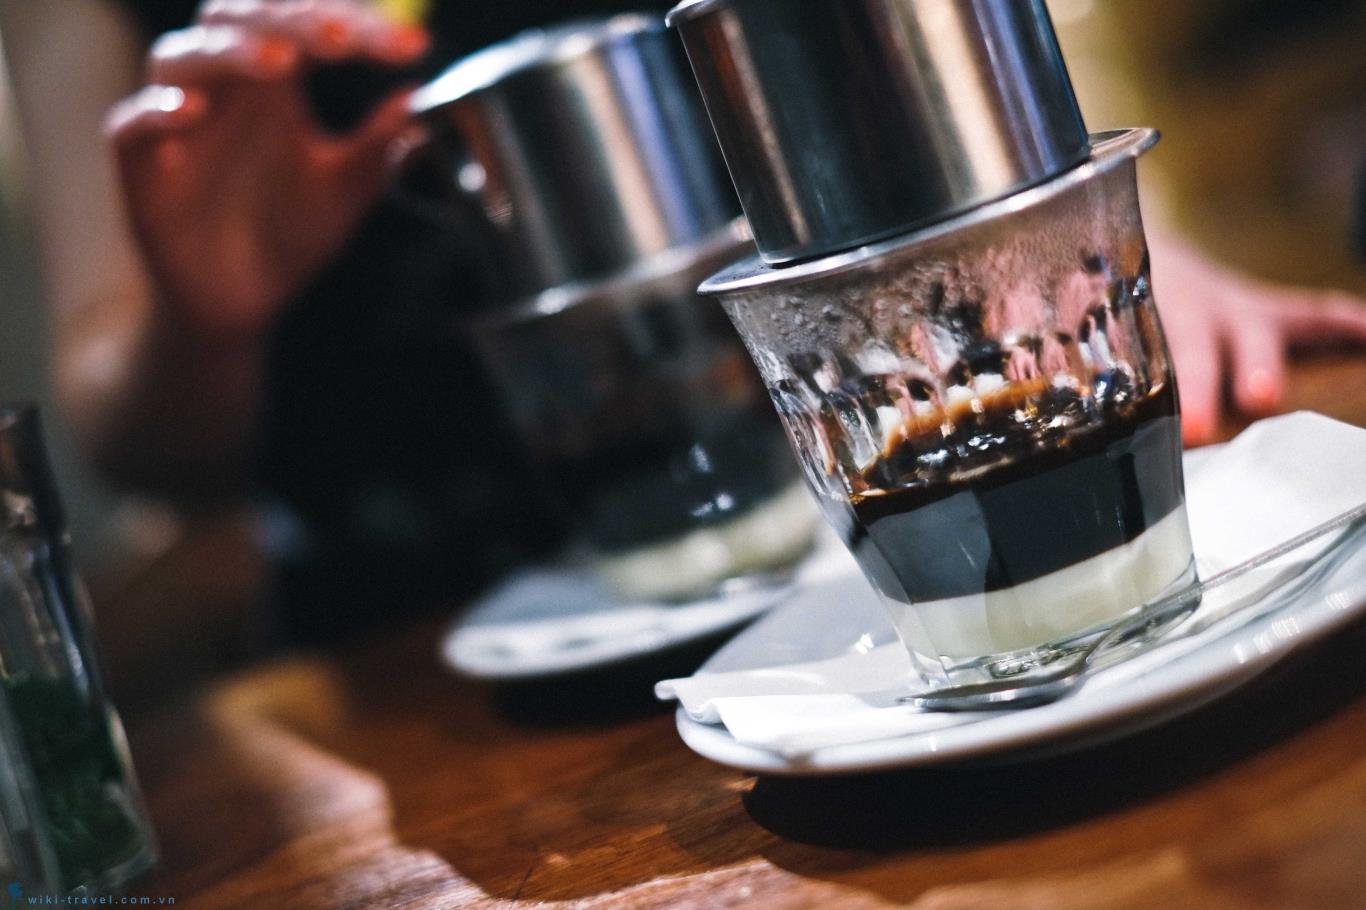 Bạn yêu thích hương vị cà phê đậm đà được pha bằng phin truyền thống? Những hình ảnh ly cà phê phin sẽ làm tăng sự ham muốn của bạn. Khám phá và cảm nhận hương vị đúng chuẩn tại Hân Vinh Coffee!